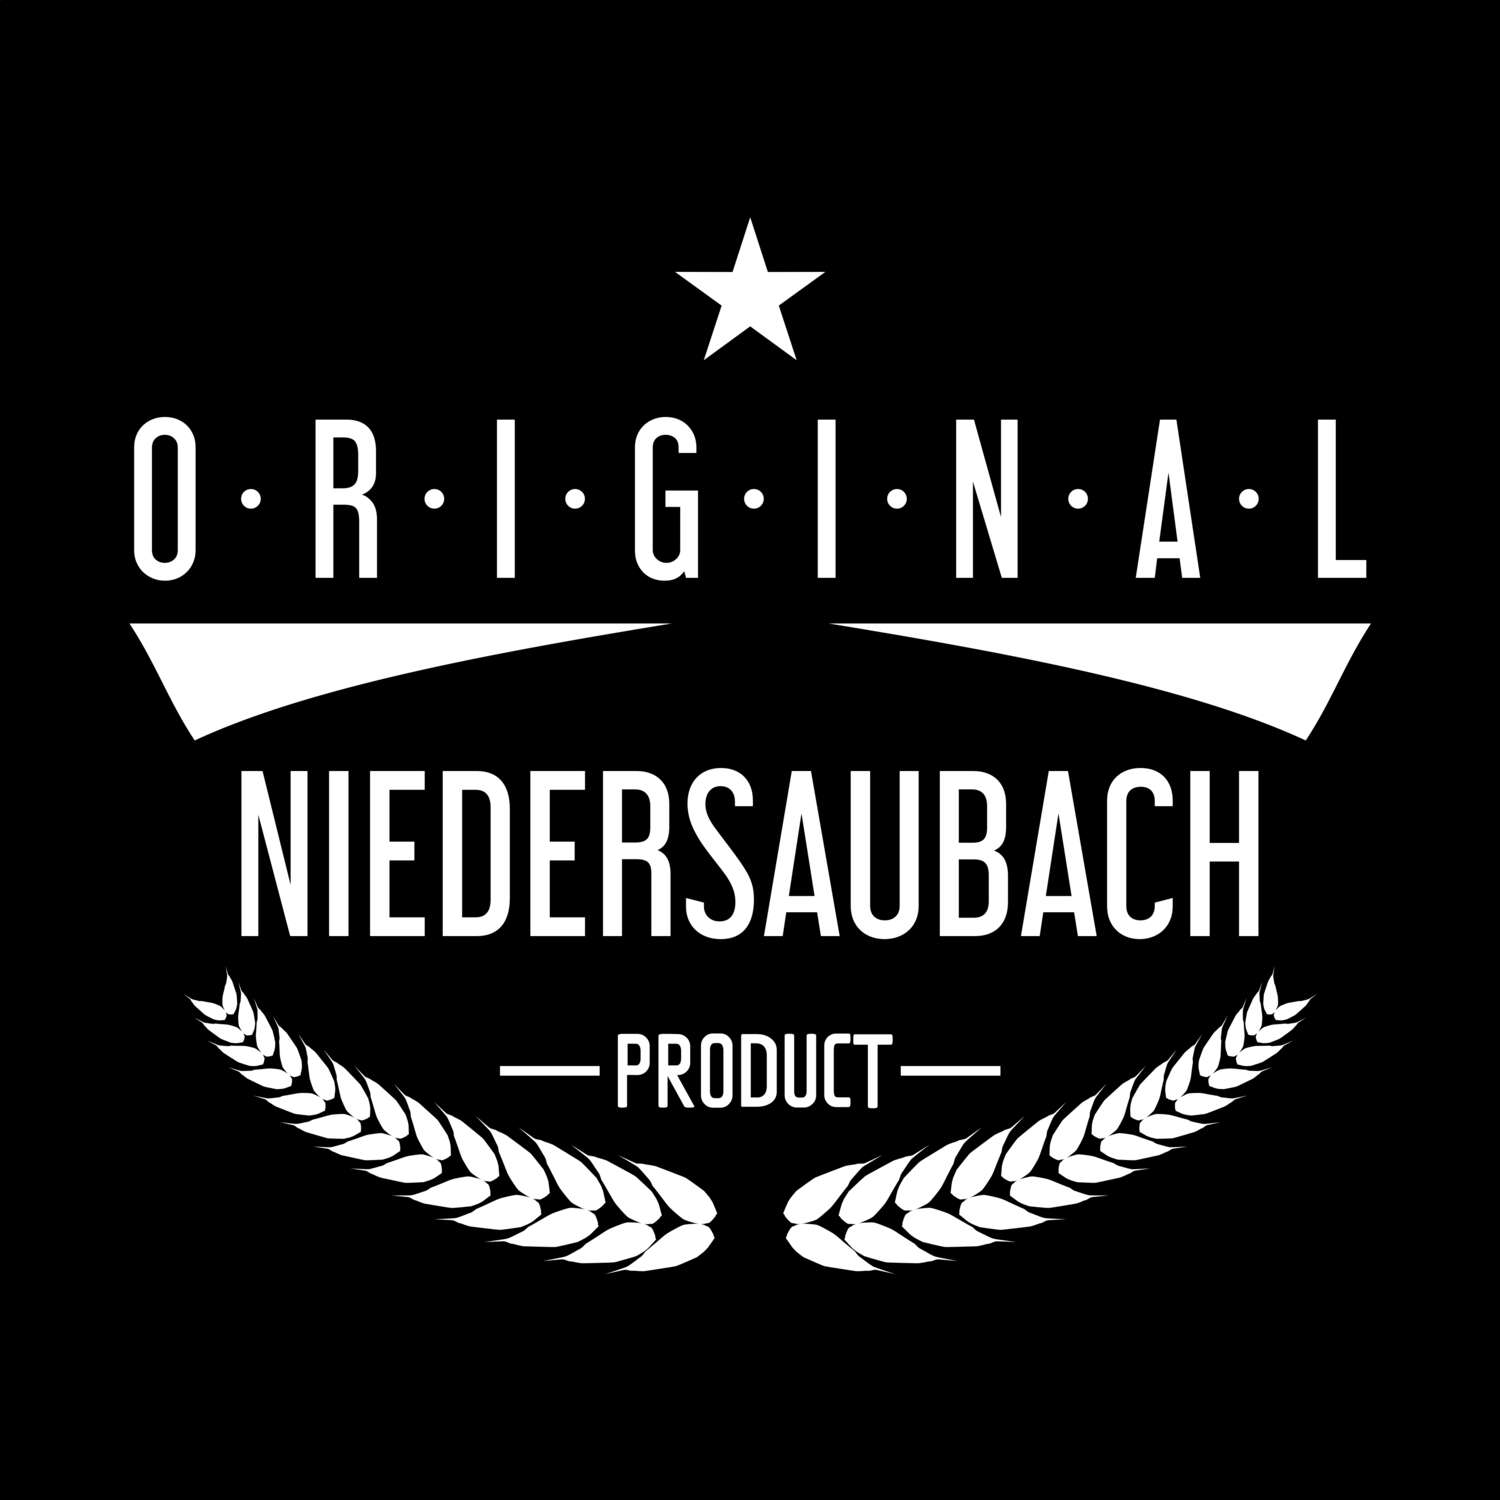 Niedersaubach T-Shirt »Original Product«